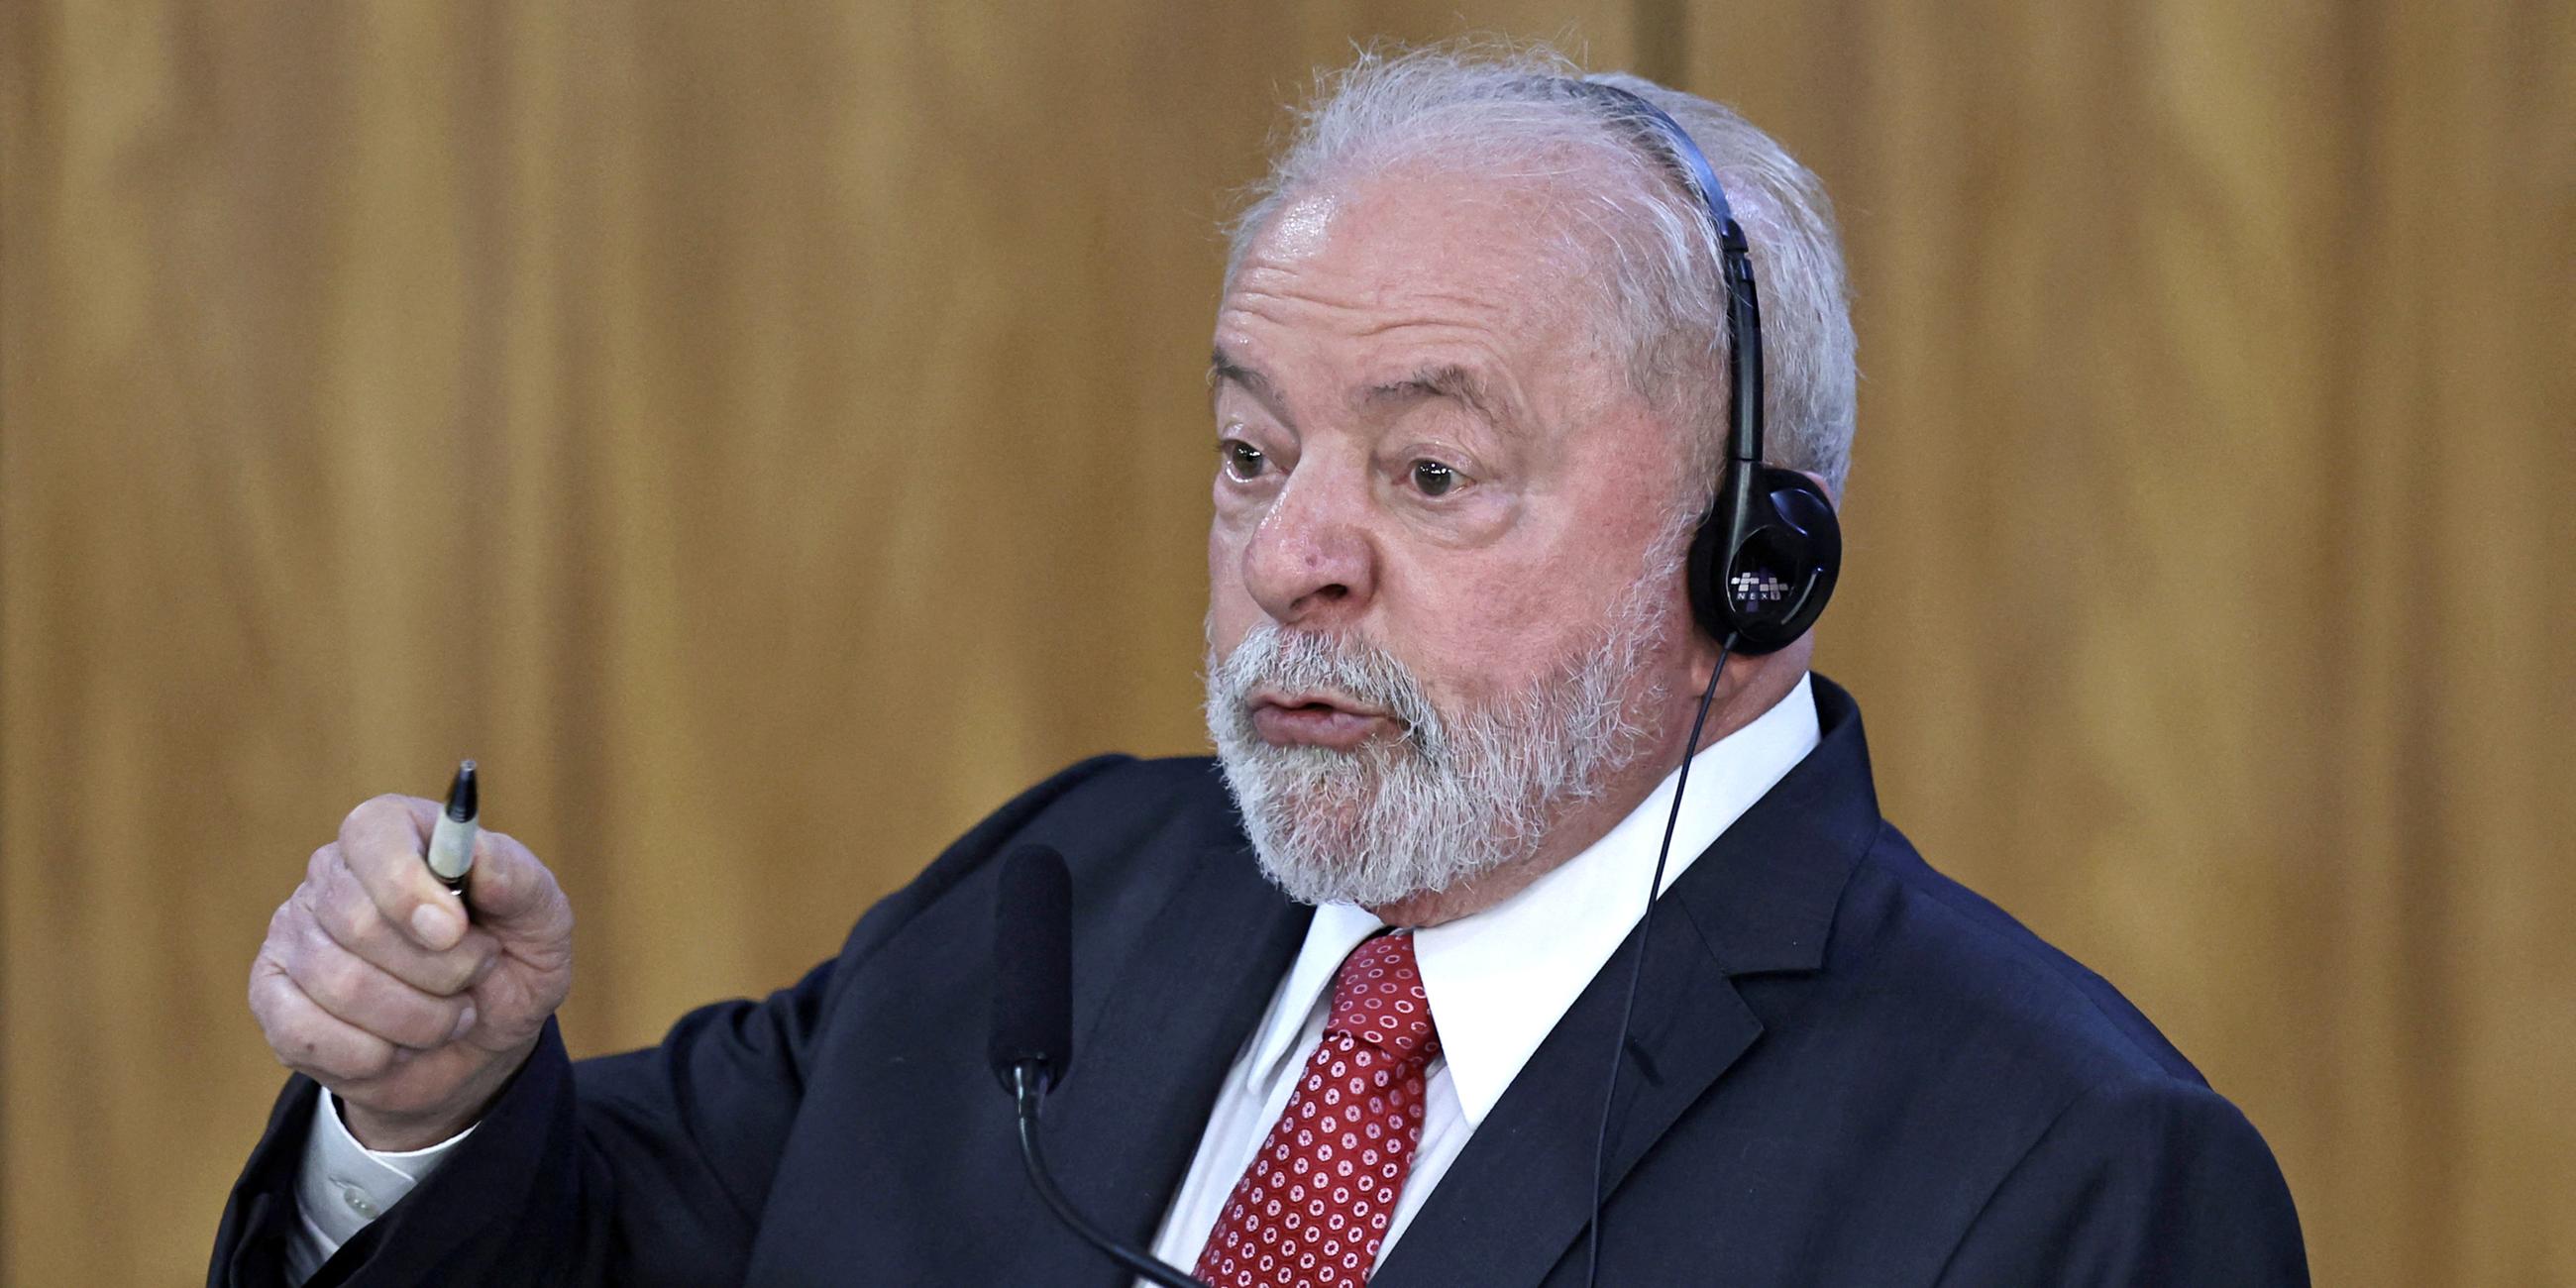 Brasiliens Präsident Luiz Inacio Lula da Silva hält eine gemeinsame Pressekonferenz mit Bundeskanzler Olaf Scholz im Planalto-Palast in Brasilia (Brasilien) am 30.01.2023